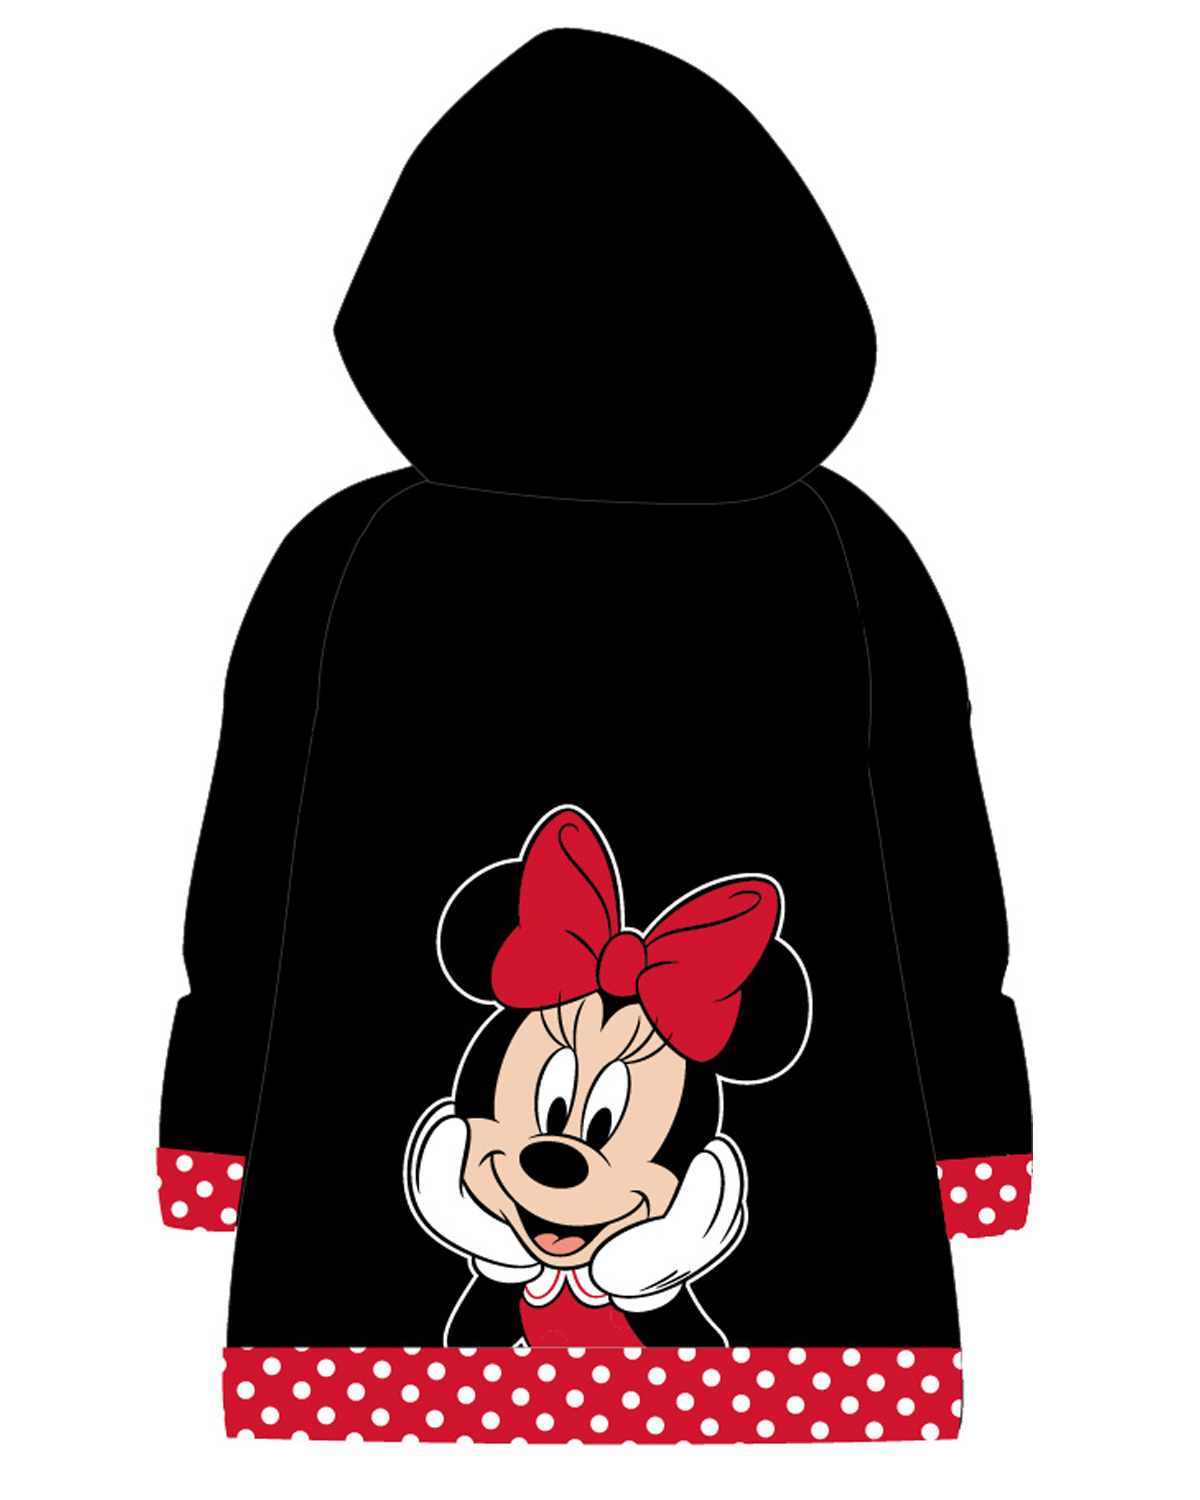 Minnie Mouse - licence Dívčí pláštěnka - Minnie Mouse 52289467, černá Barva: Černá, Velikost: 104-110